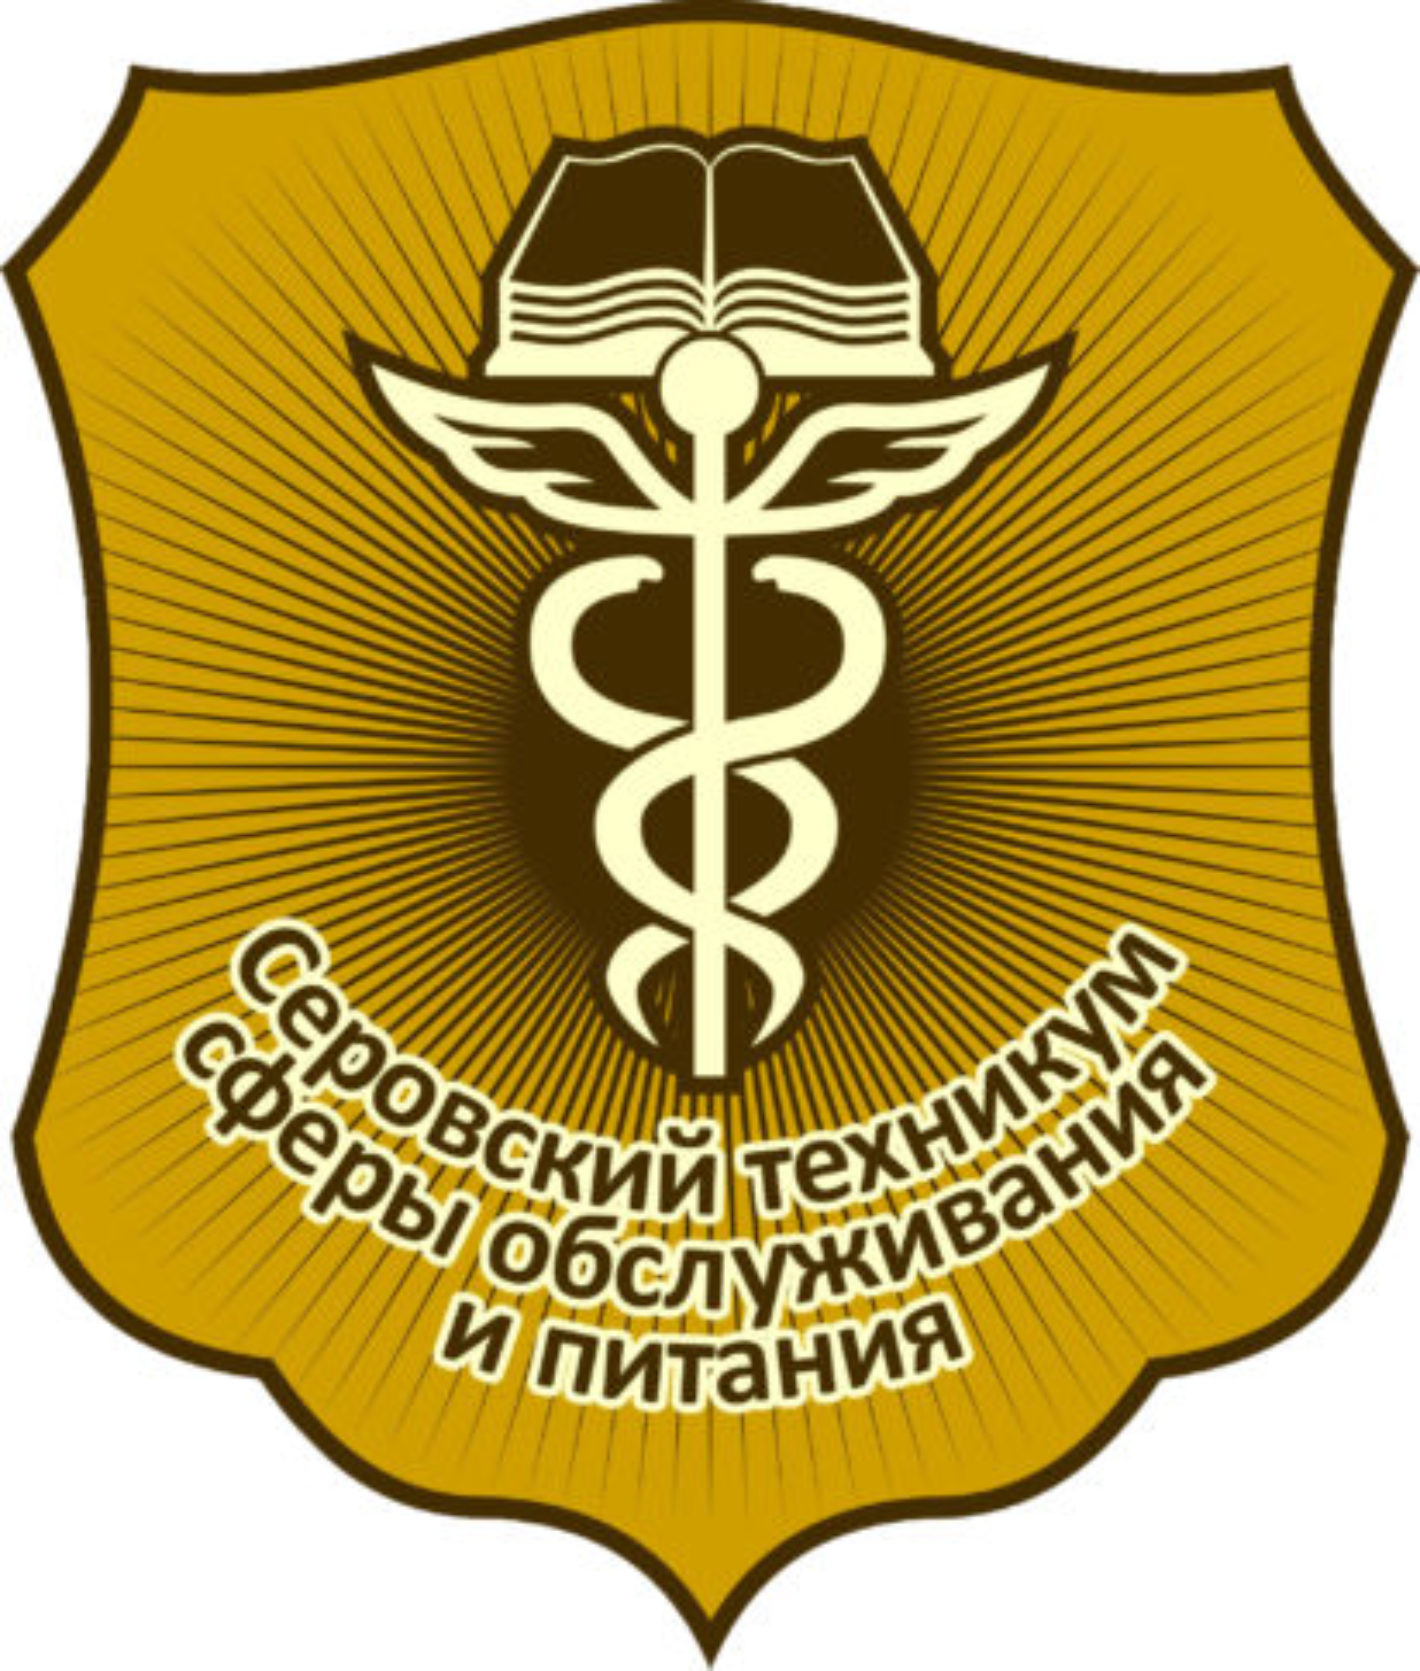 Логотип (Серовский Техникум Сферы Обслуживания и Питания)